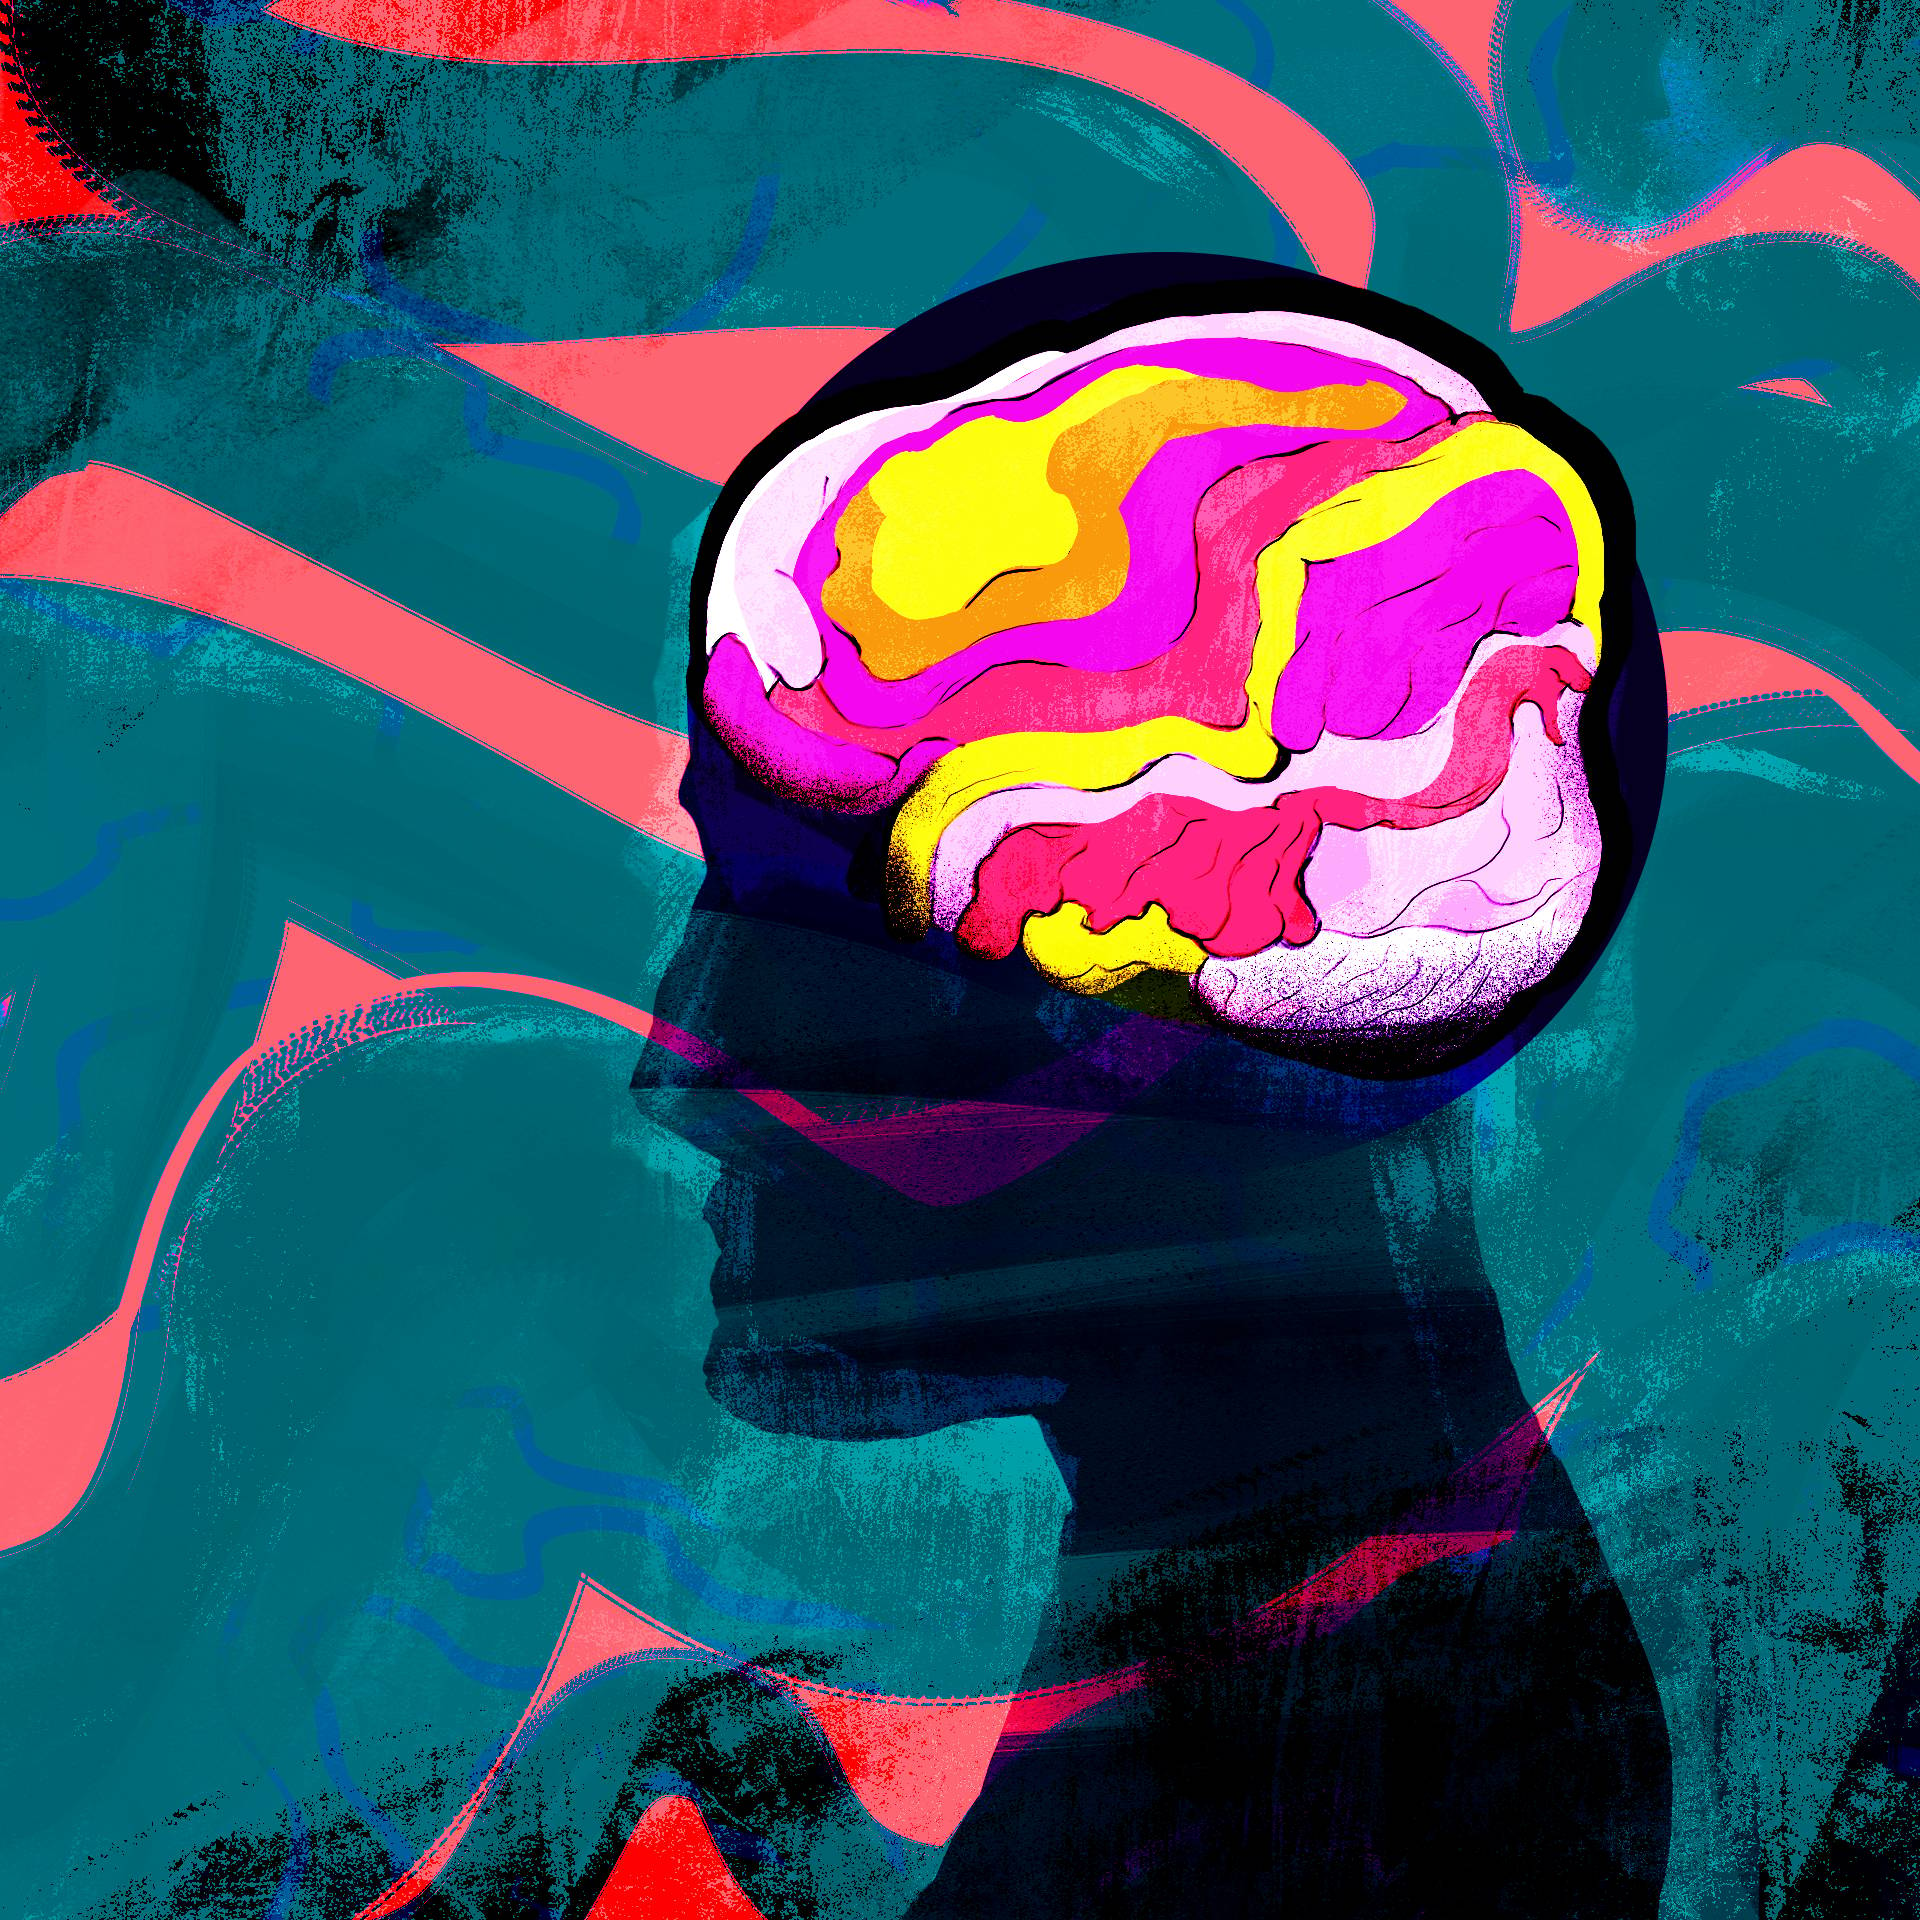 Rysnek głowy z ujawnionym kolorowym zarysem mózgu